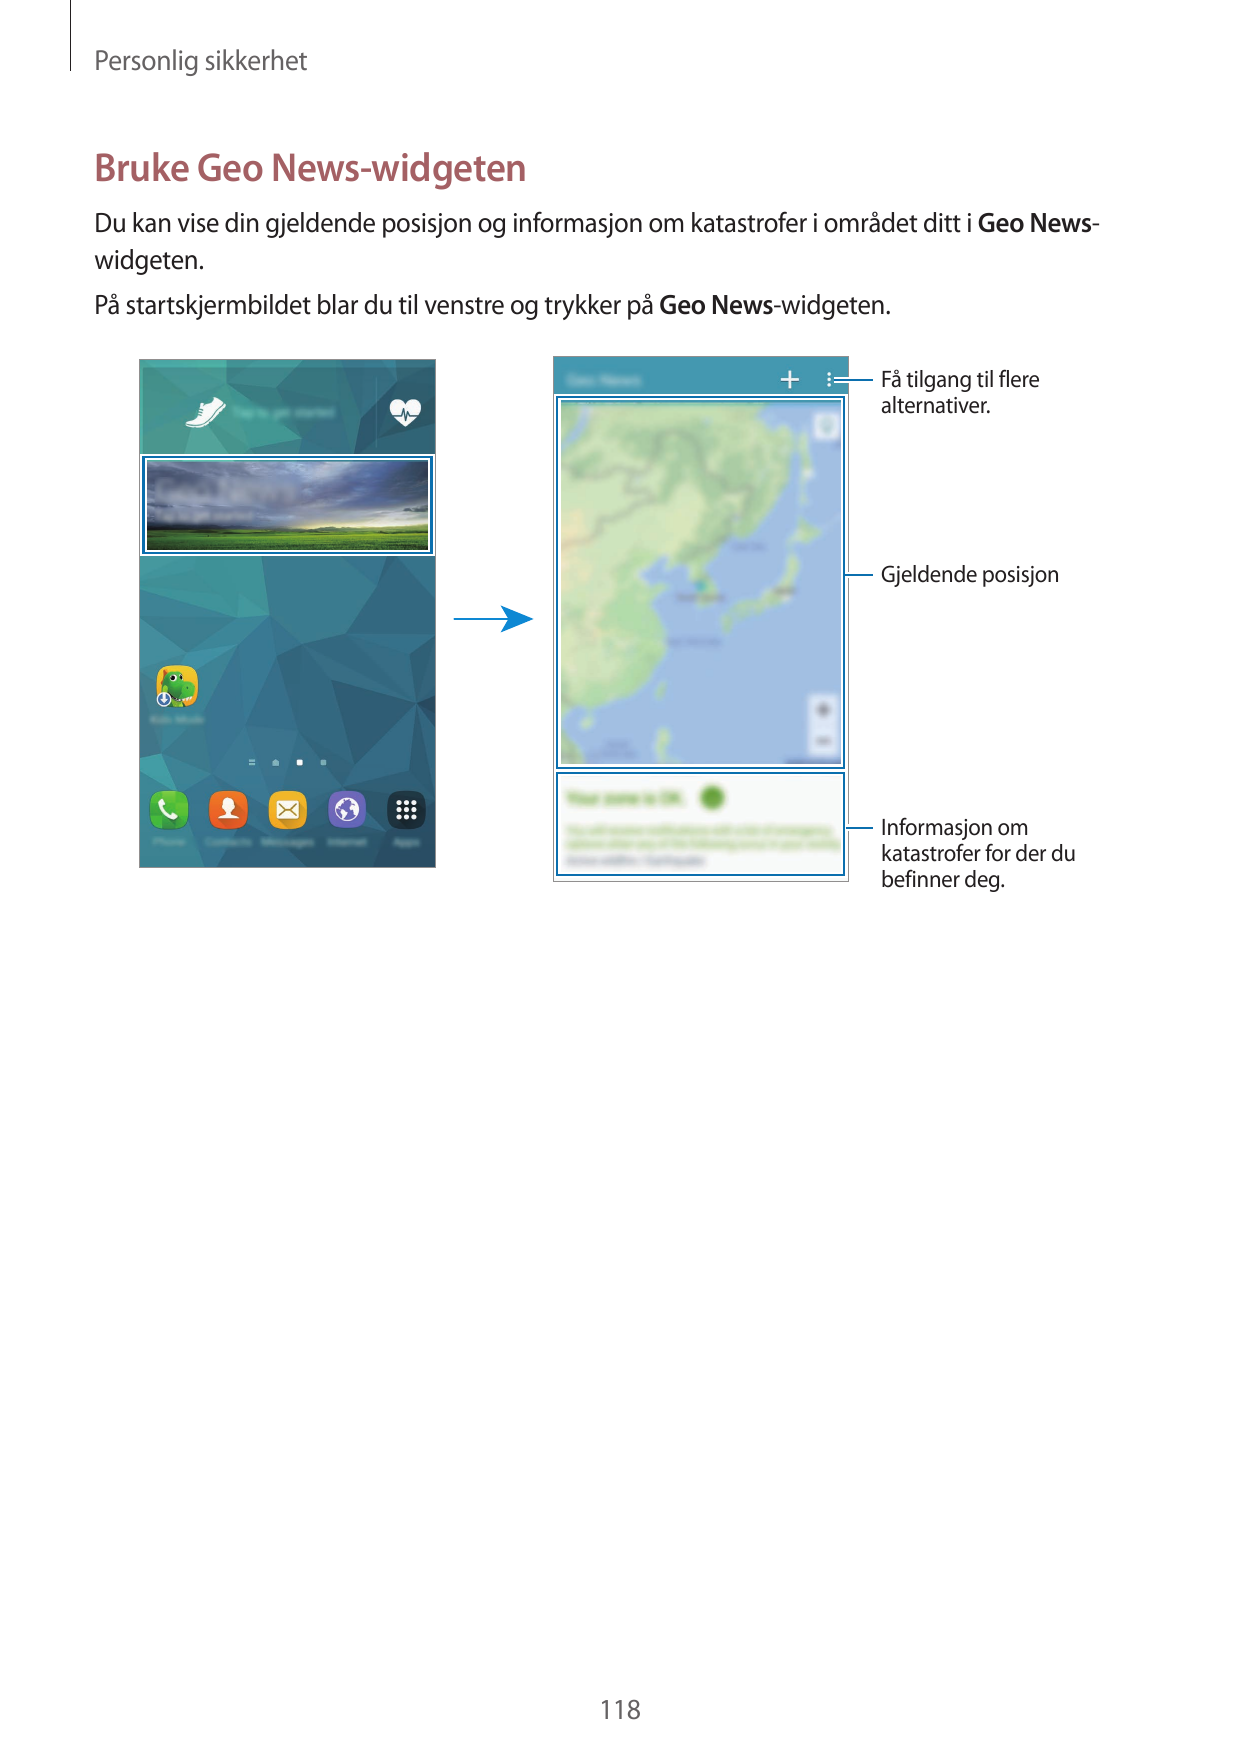 Personlig sikkerhetBruke Geo News-widgetenDu kan vise din gjeldende posisjon og informasjon om katastrofer i området ditt i Geo 